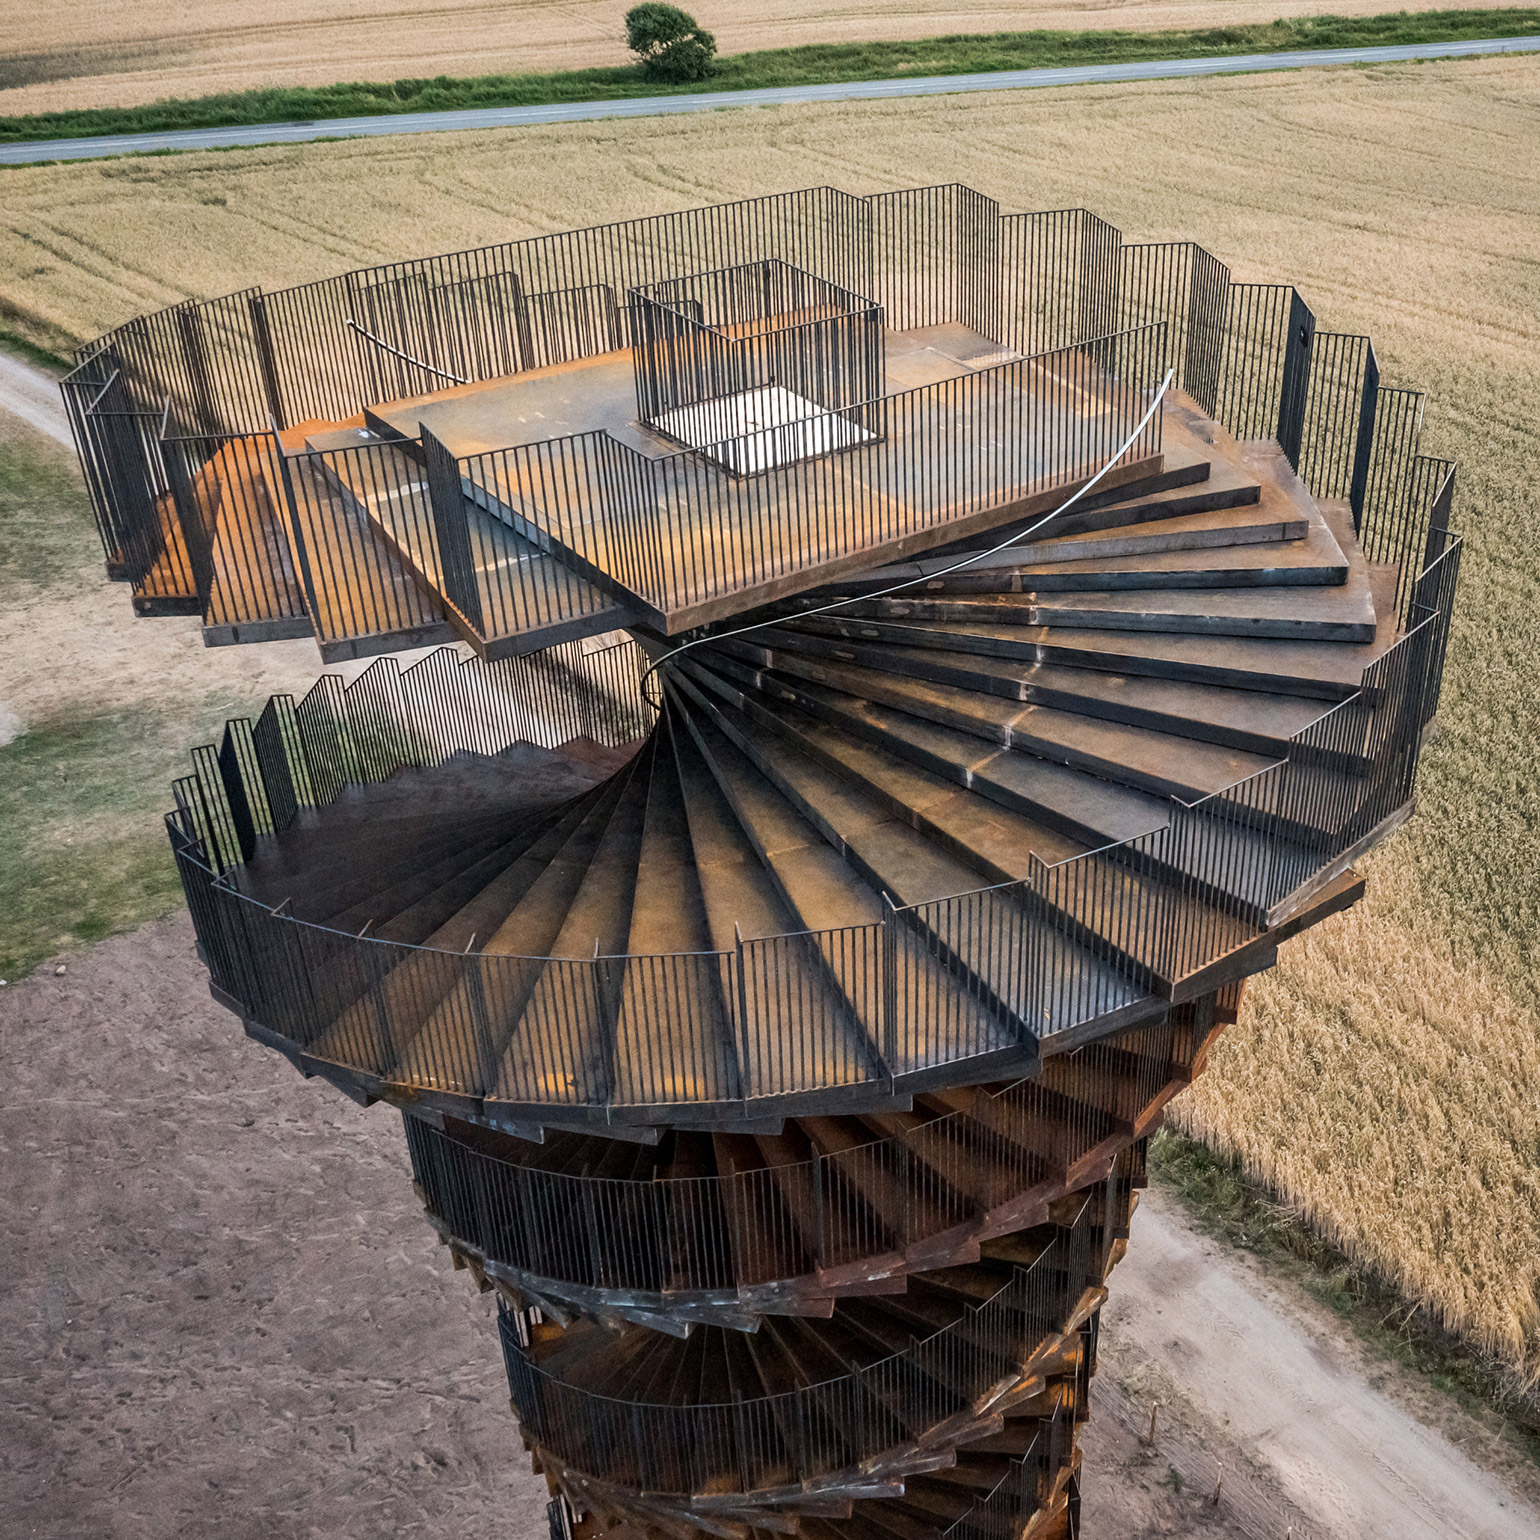 Marsk Observation Tower Designed by BIG Opens in Denmark